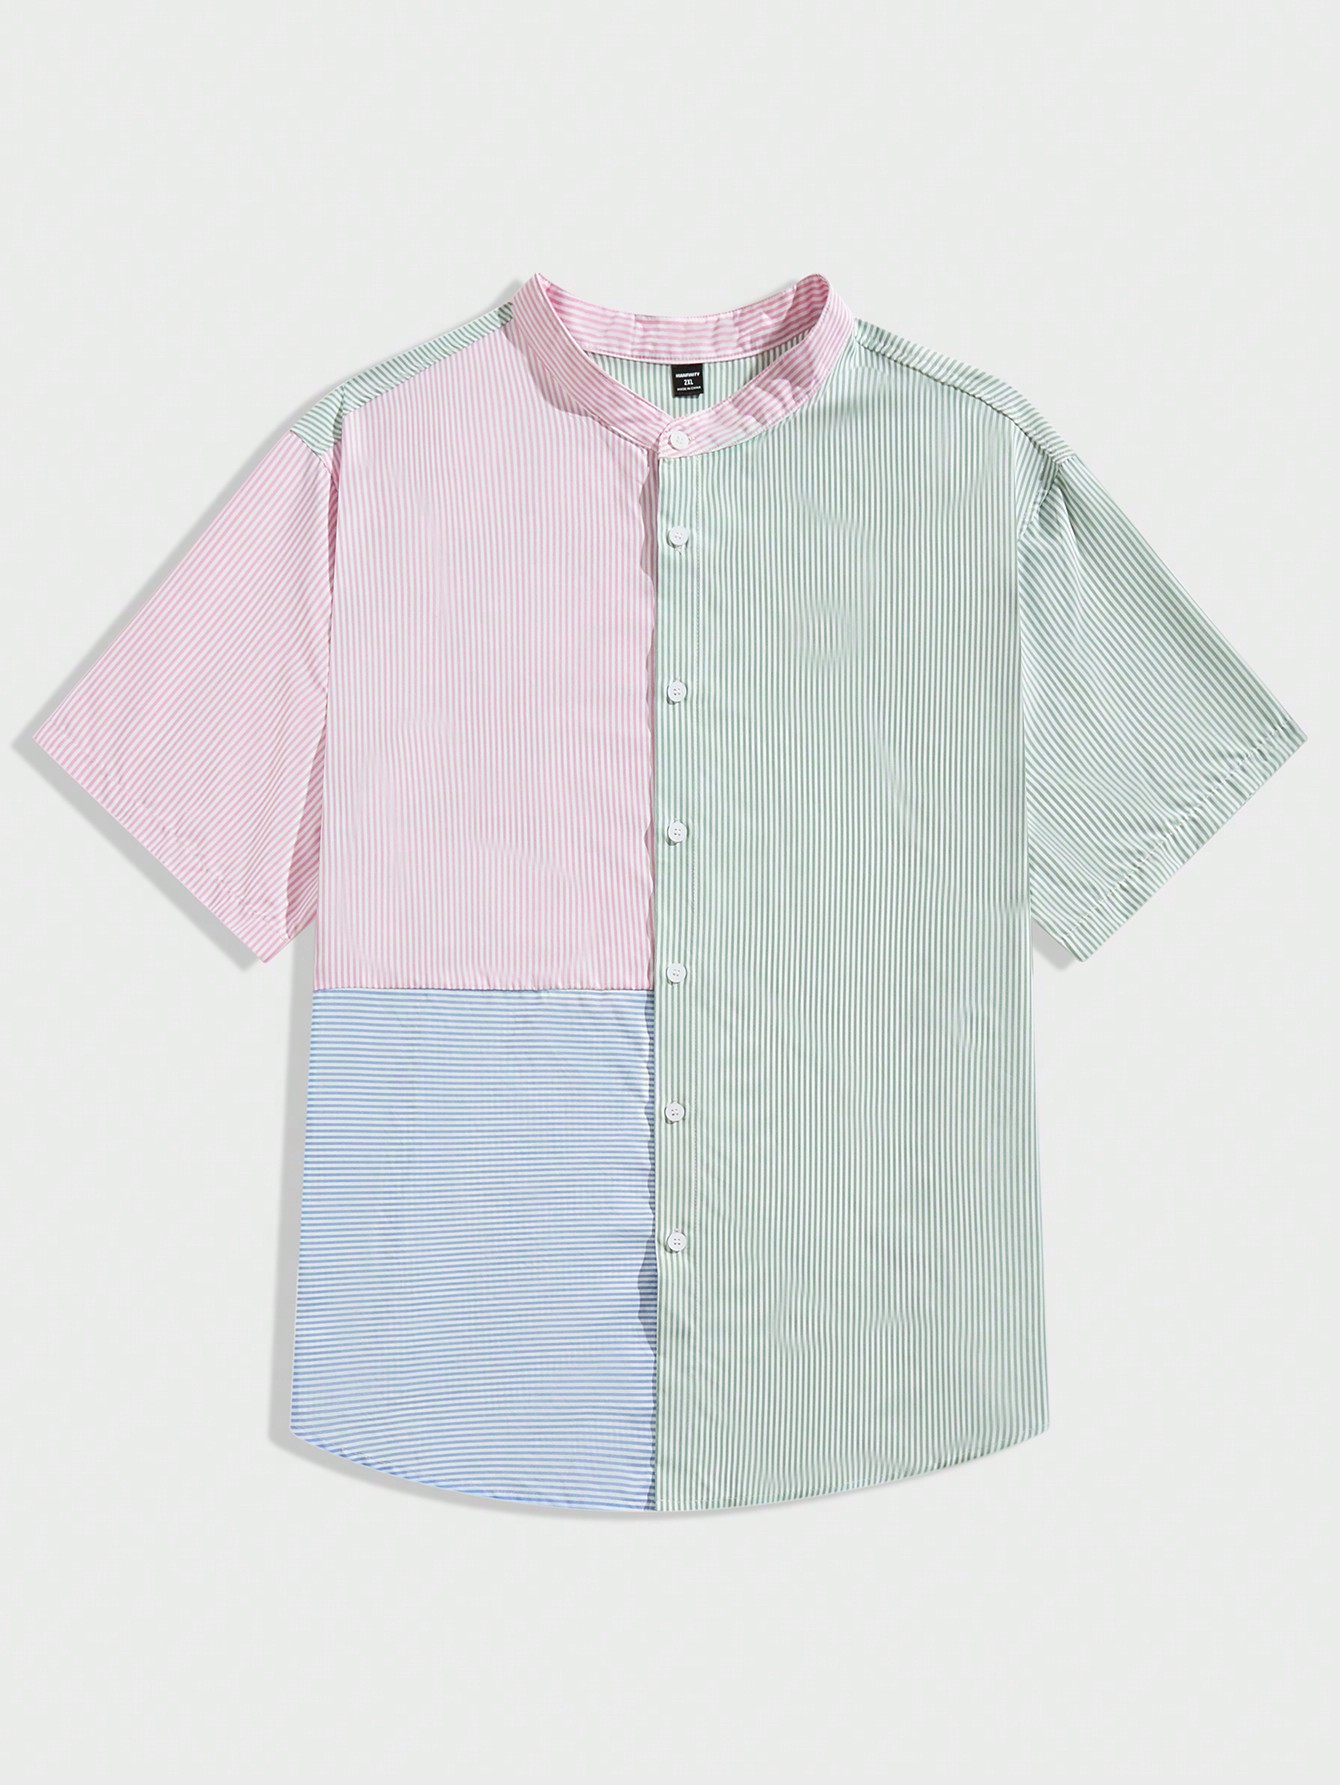 Мужская рубашка в полоску с цветными блоками Manfinity Hypemode Plus, зеленый мужская рубашка с объемным рисунком морских животных морских рыб летняя повседневная свободная рубашка с короткими рукавами размеры до